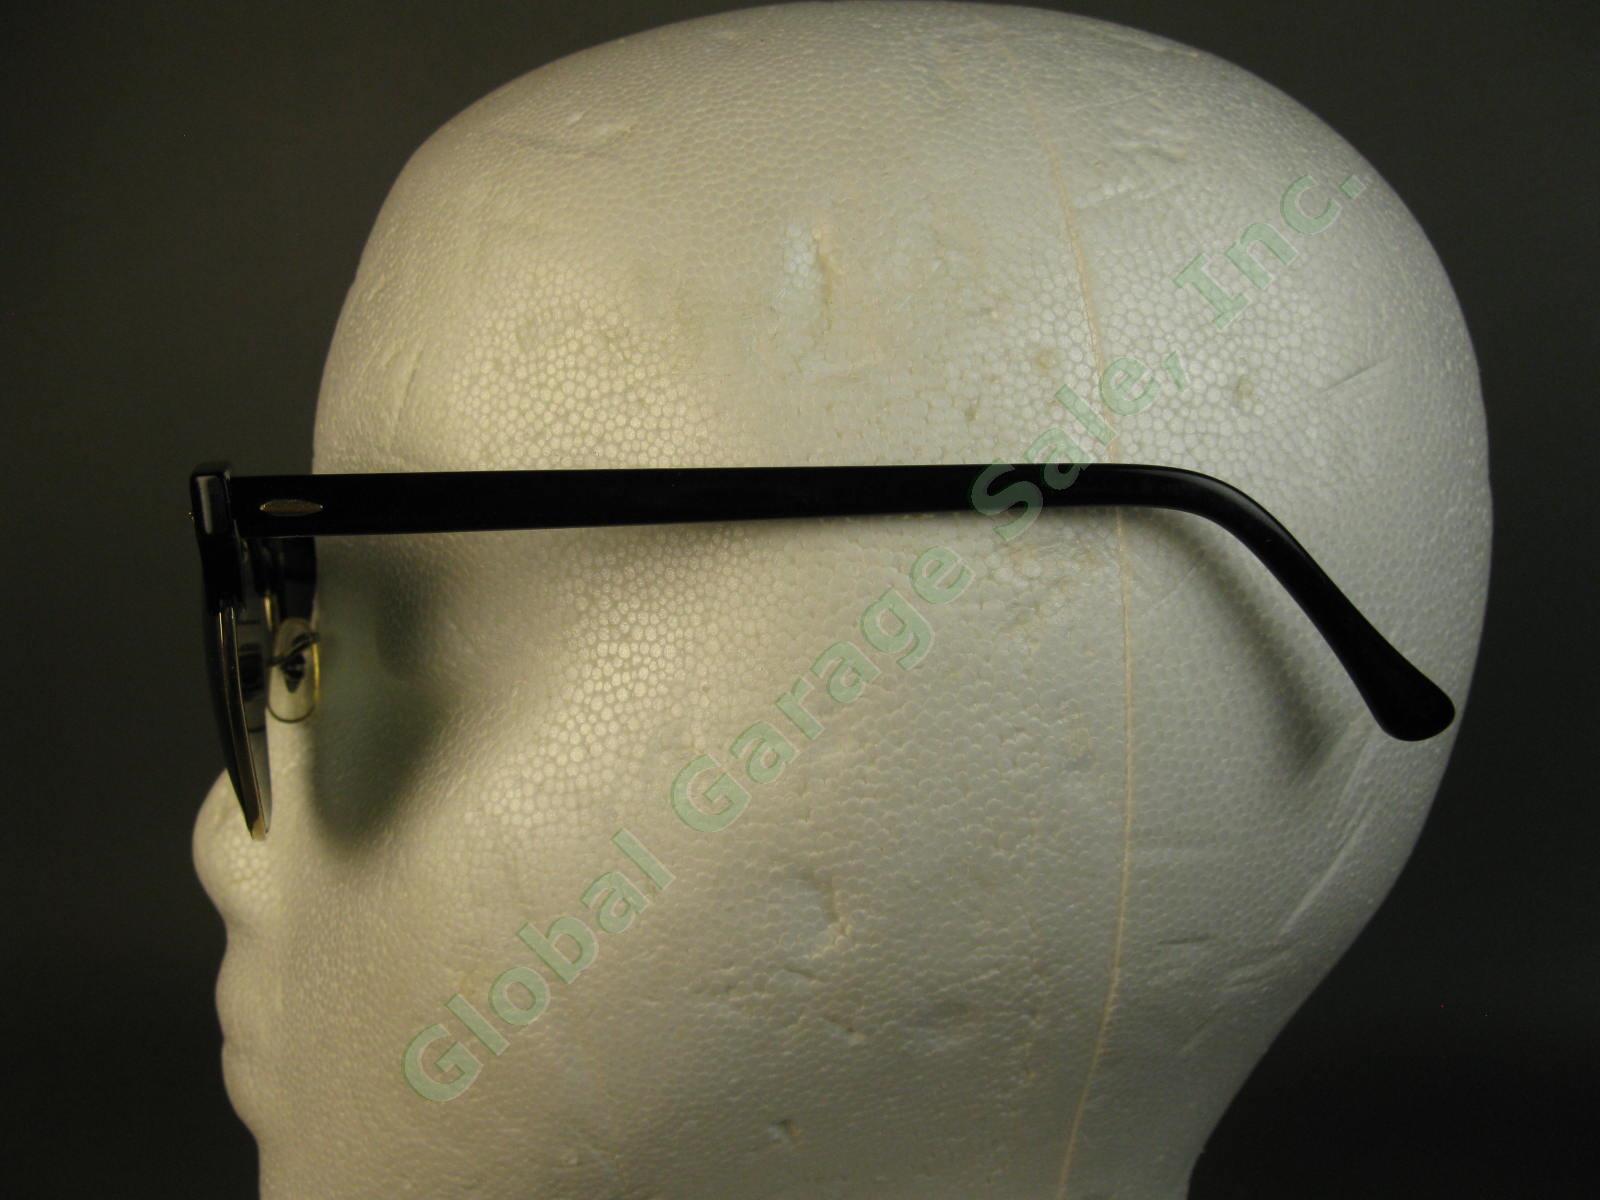 VTG B&L Ray-Ban ClubMaster Sunglasses Arista Ebony W1115 G15 RB3016 Bausch Lomb 1